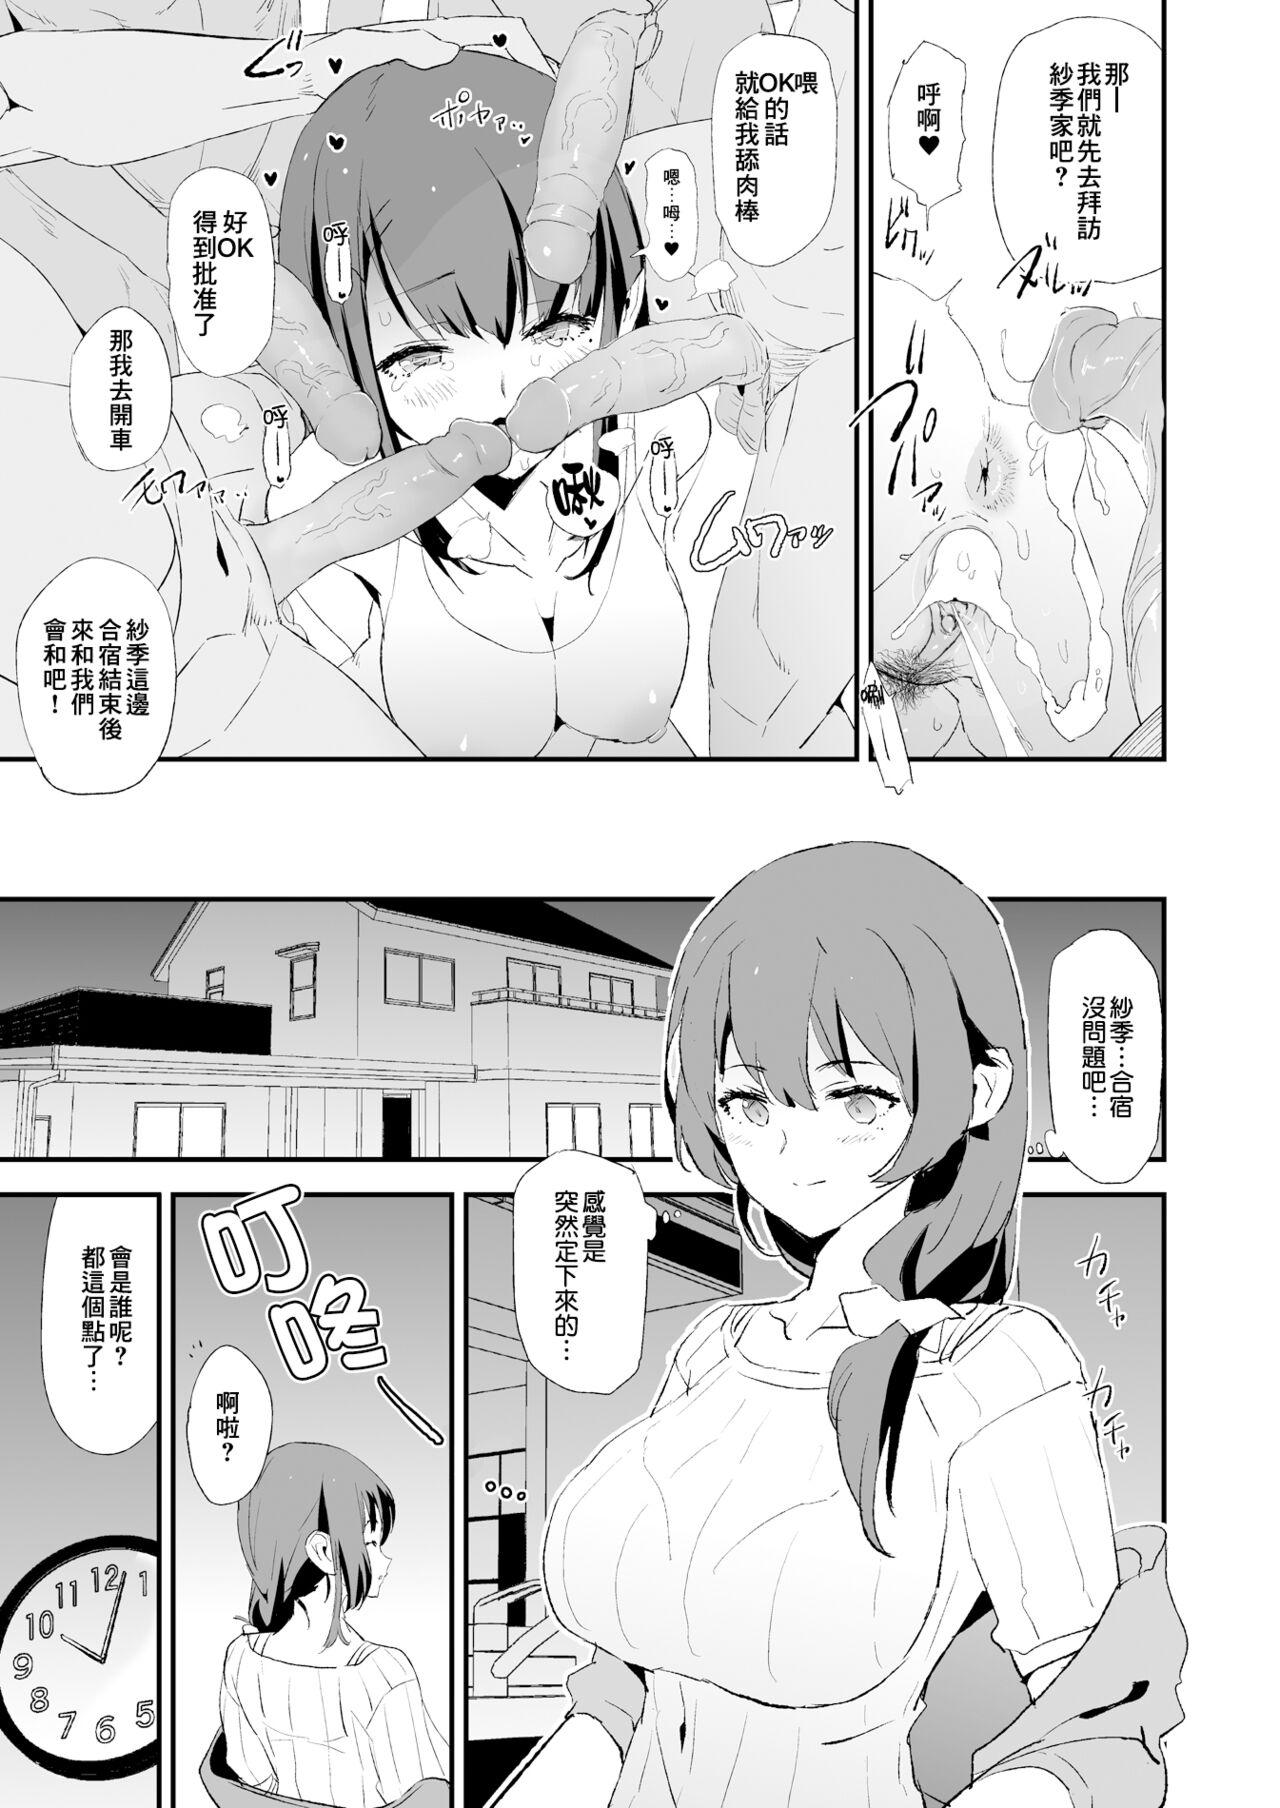 Licking Musume no Tsugi wa Mama Onaho - Onaho Gasshuku #2 + Omake - Original Gay Money - Page 10